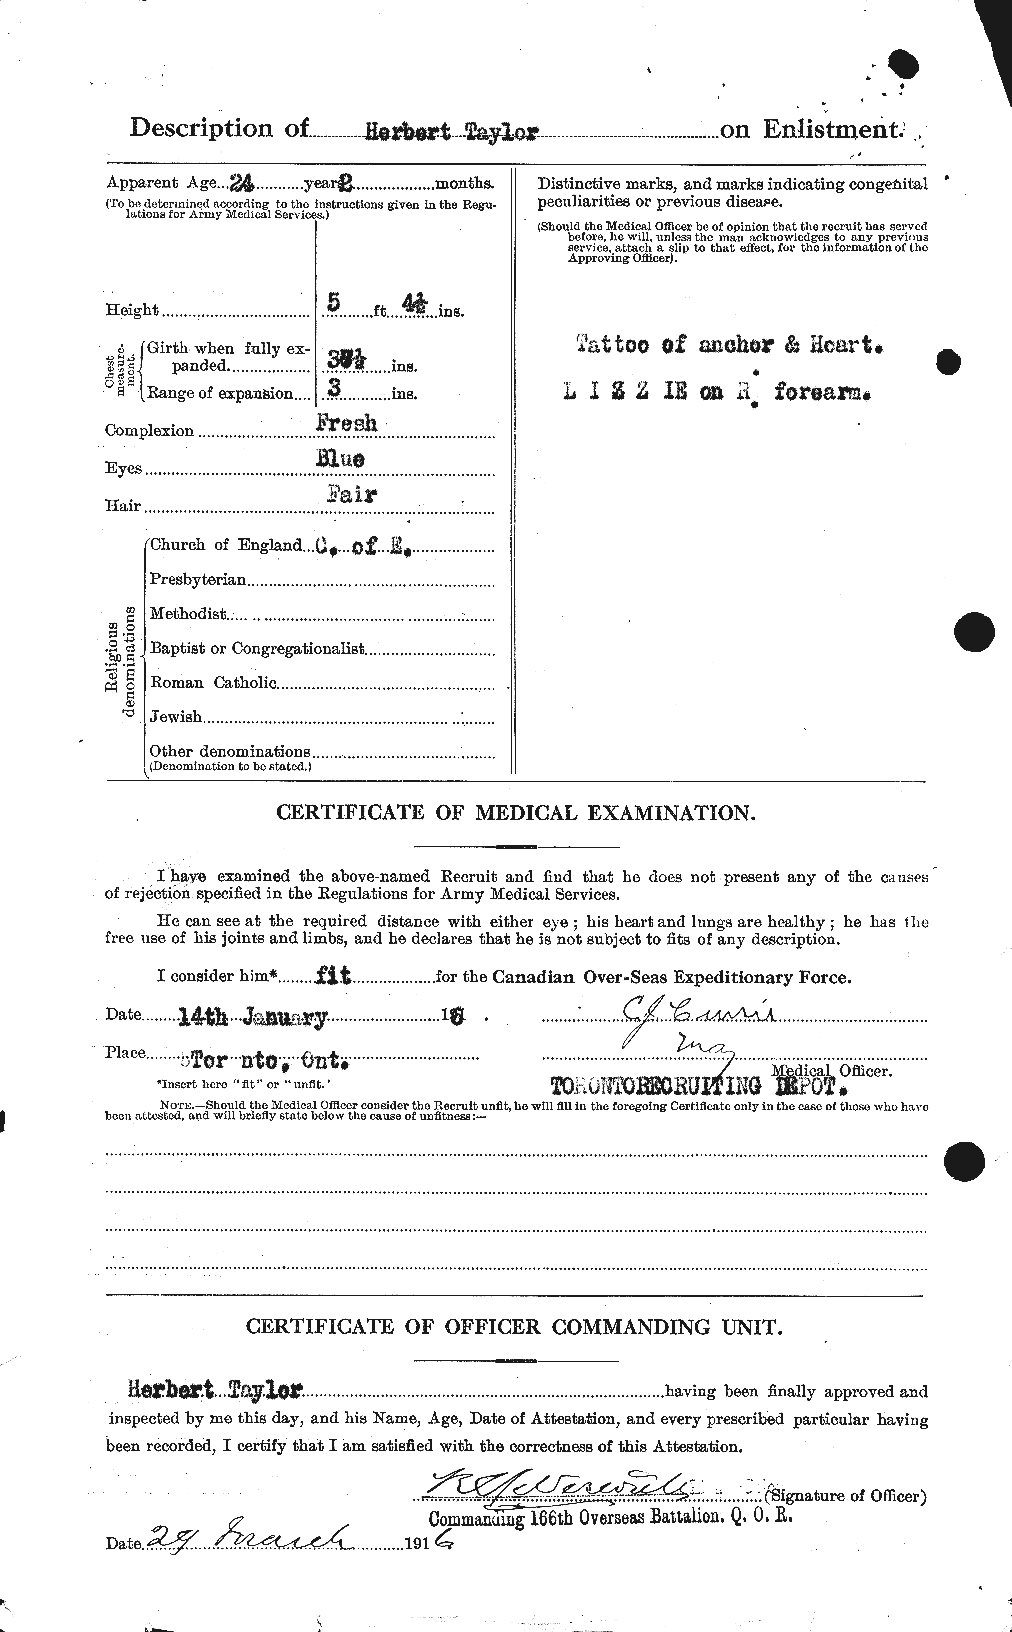 Dossiers du Personnel de la Première Guerre mondiale - CEC 626559b